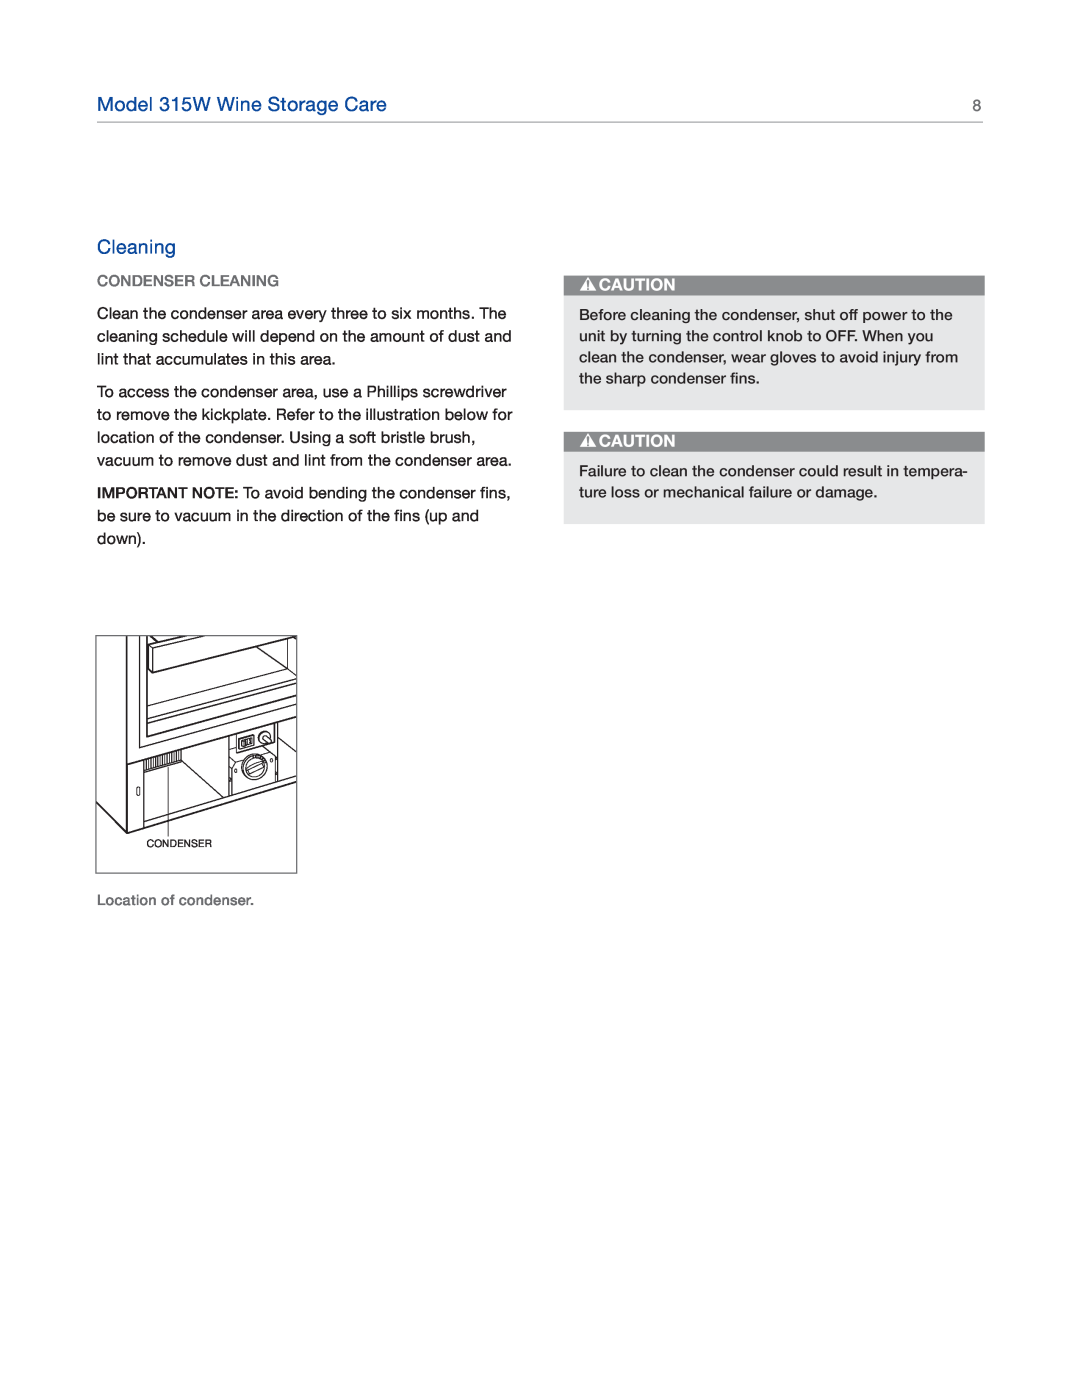 Sub-Zero manual Condenser Cleaning, Model 315W Wine Storage Care, Location of condenser 